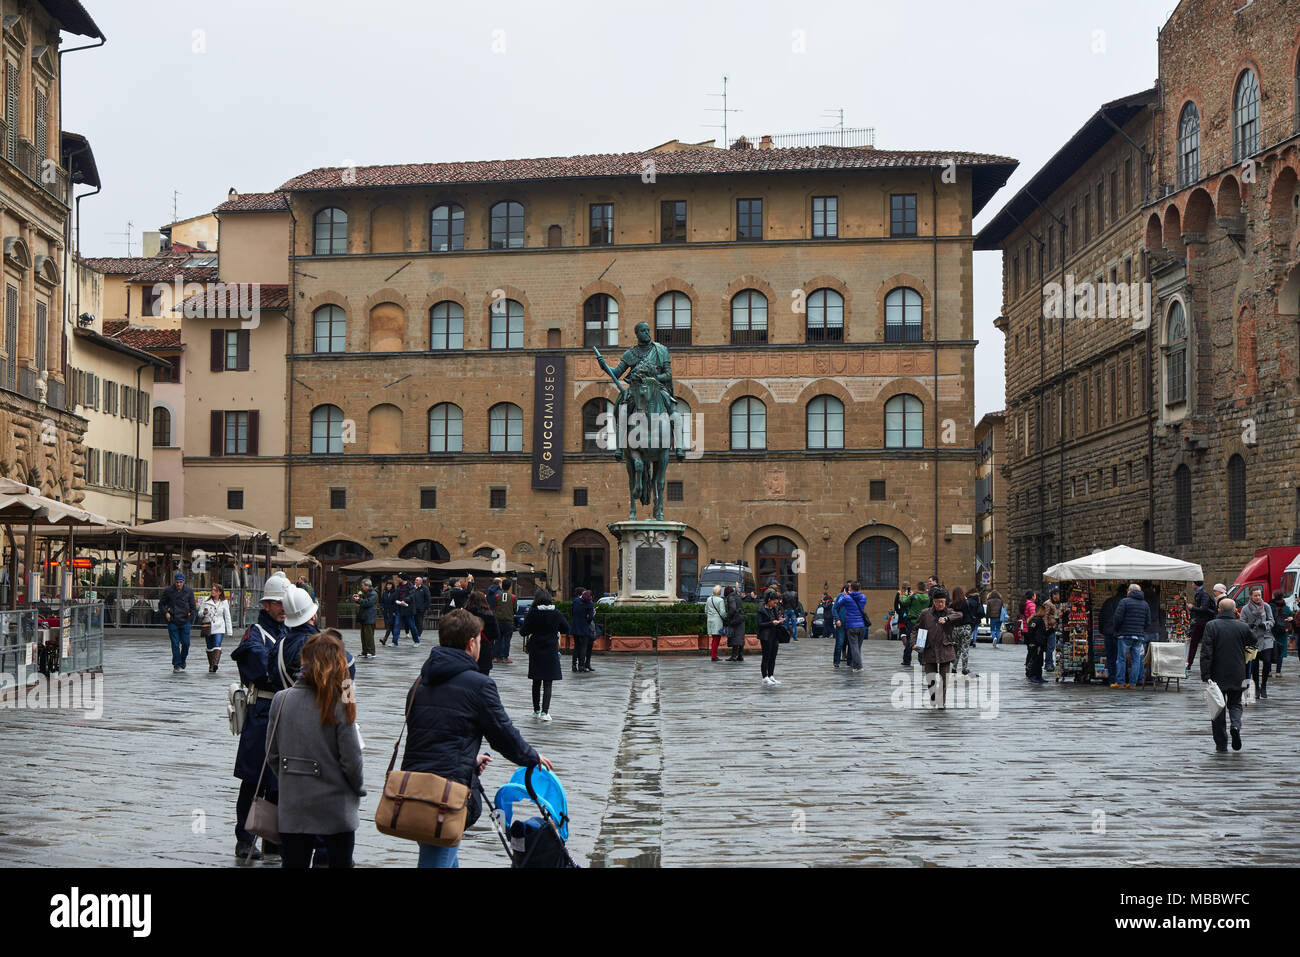 Firenze, Italia - Febbraio 17, 2016: monumento equestre di Cosimo I, una statua equestre in bronzo eretta nel 1594, davanti all'angolo nord del p Foto Stock